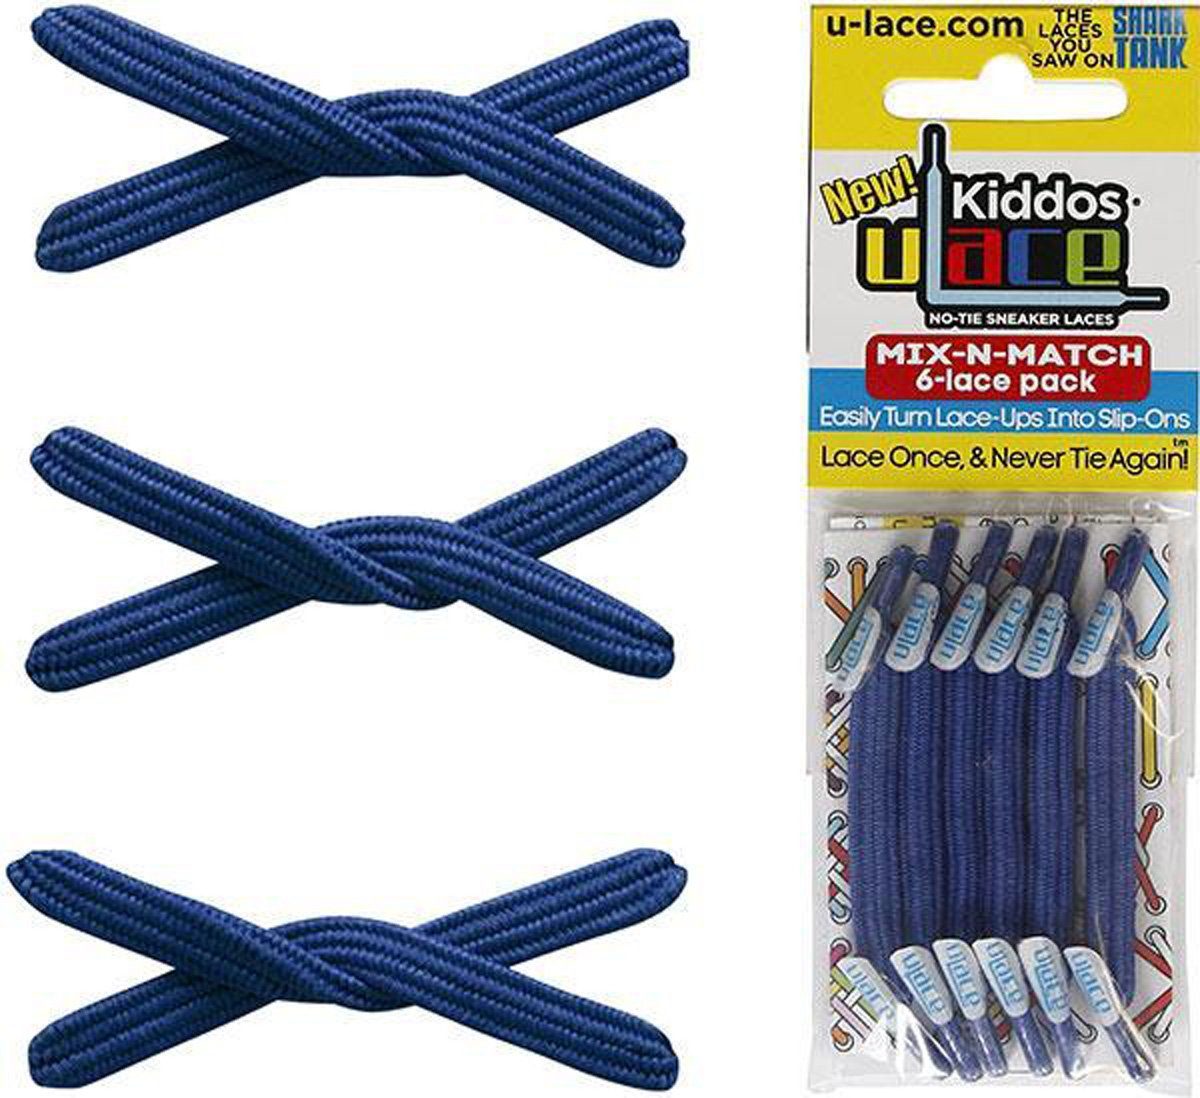 U-Laces Schnürsenkel Wiederhaken - mit elastische Schnürsenkel Blue Royal Kiddos Kinder für